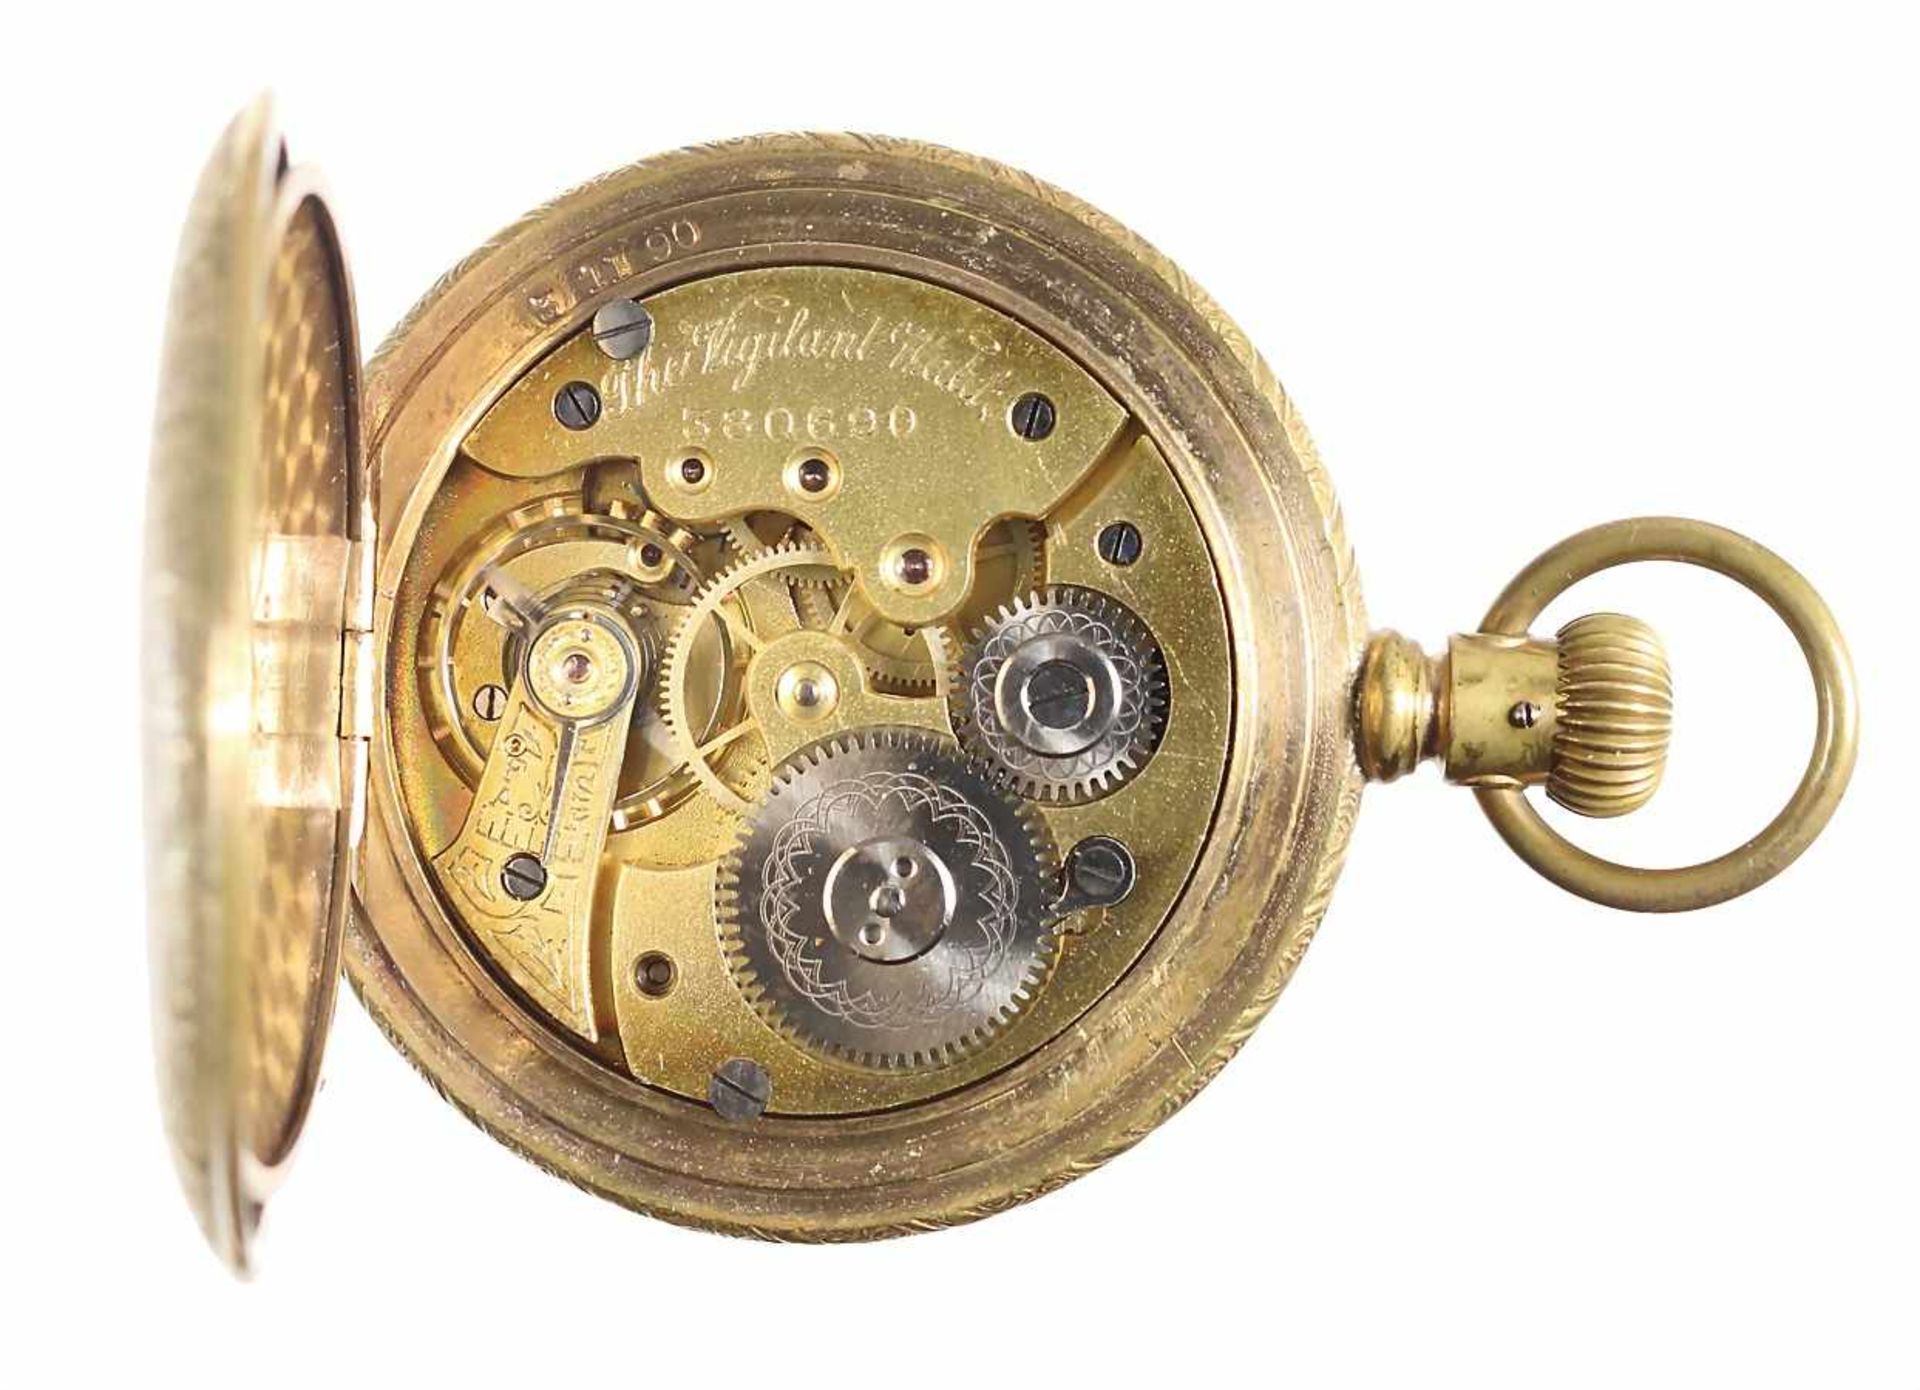 Herren-Sprungdeckel-Taschenuhr, 1910/20er Jahre, goldfarben, röm. Index, Minuteneinteilung, kl. Sek. - Bild 3 aus 4